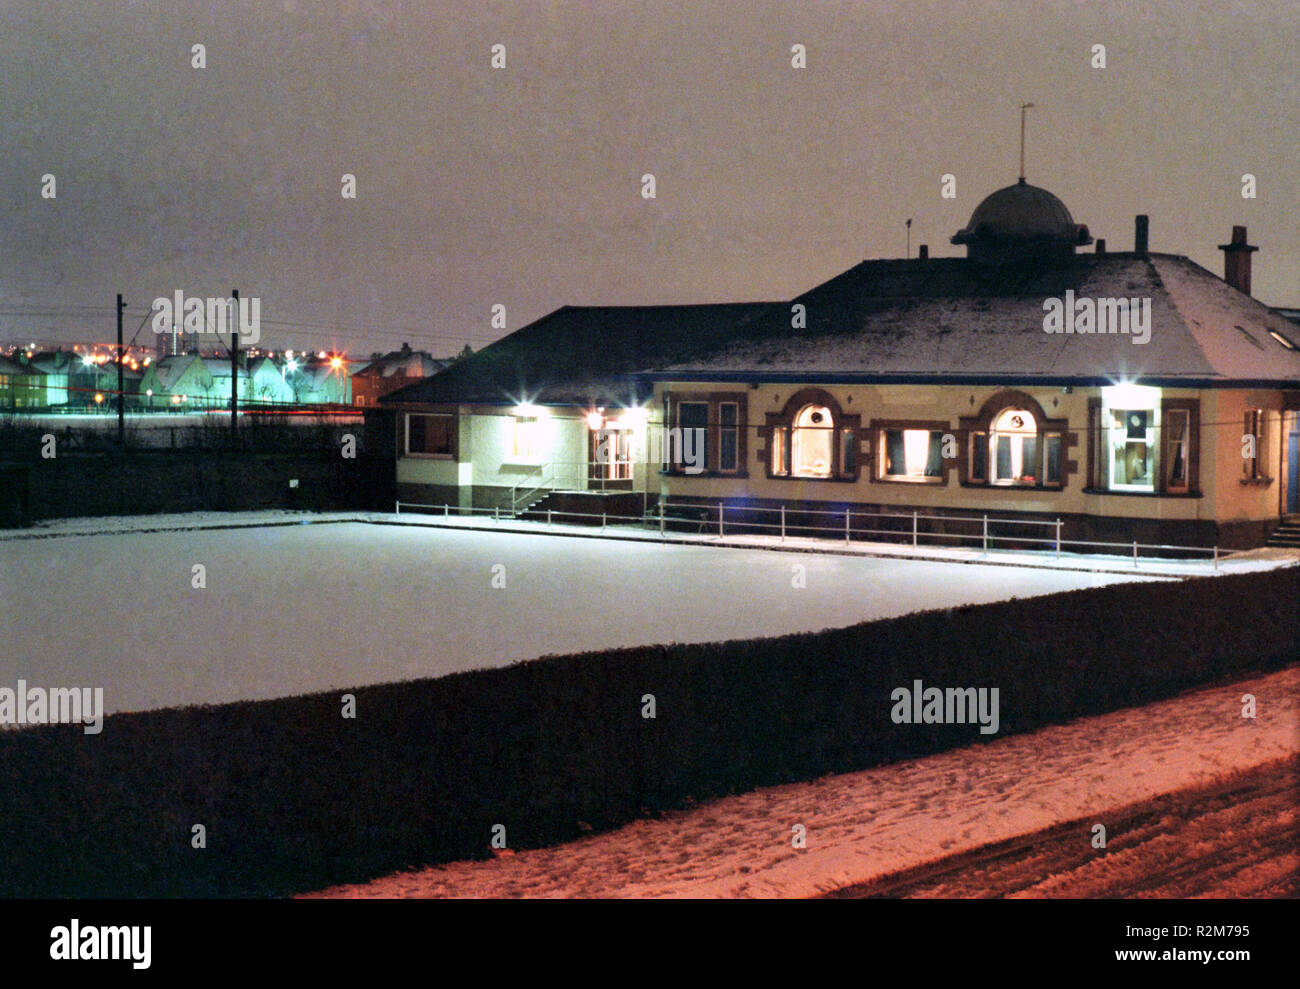 Le Club de bowling de Clydebank dans la neige, prises d'un tenement fenêtre à Dunedin Terrasse. - Janvier 1978 Clydebank Banque D'Images